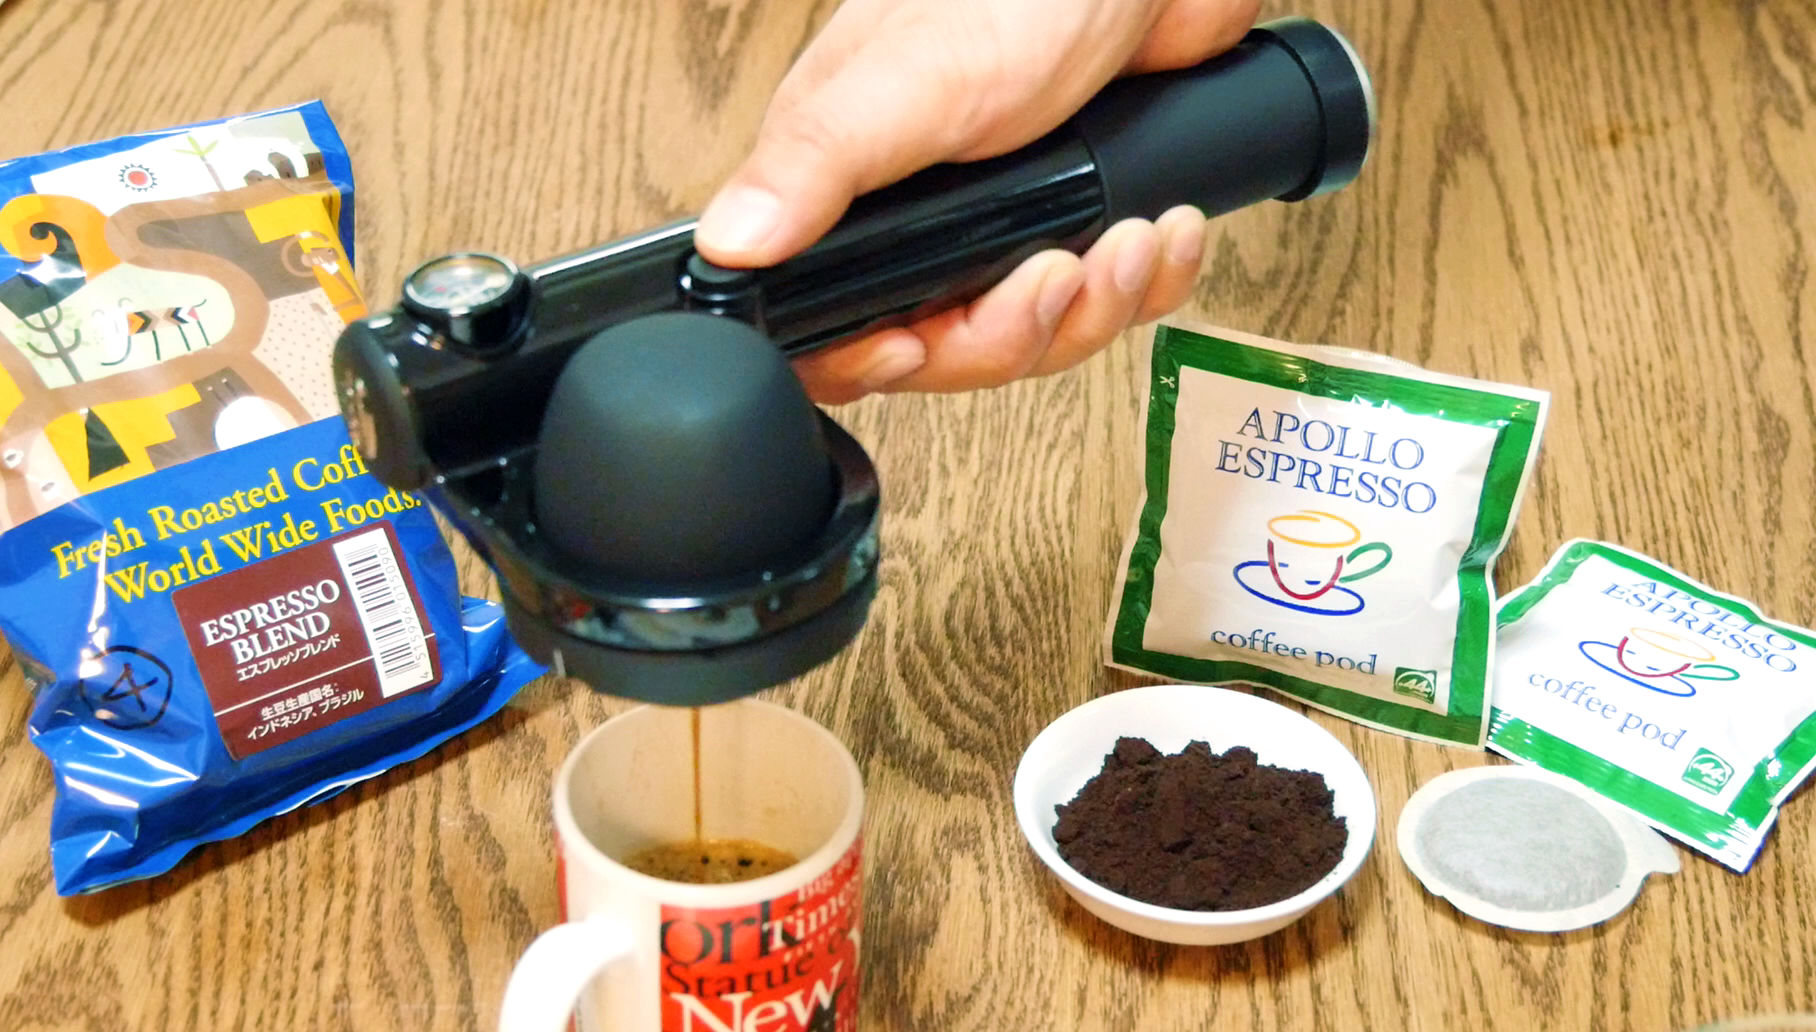 電源不要・持ち運びも可能でいつでもエスプレッソを味わえる手動エスプレッソマシン「Handpresso」 - GIGAZINE